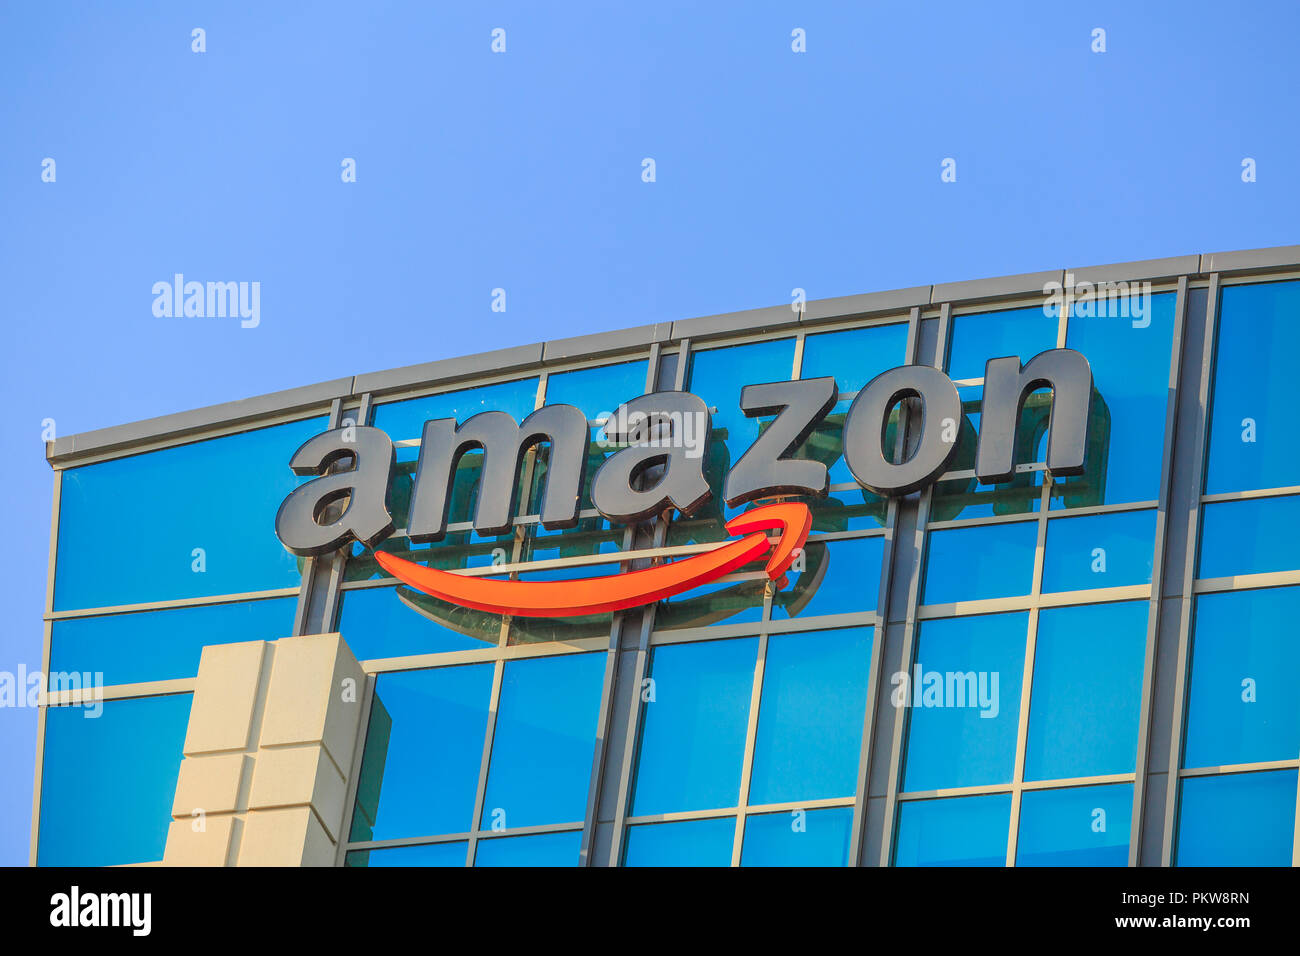 Sunnyvale, California, Stati Uniti d'America - 13 agosto 2018: closeup di Amazon segno sulla sommità del palazzo di vetro del grande campus Amazon nella Silicon Valley. Amazon è leader nel commercio elettronico e il cloud computing. Foto Stock